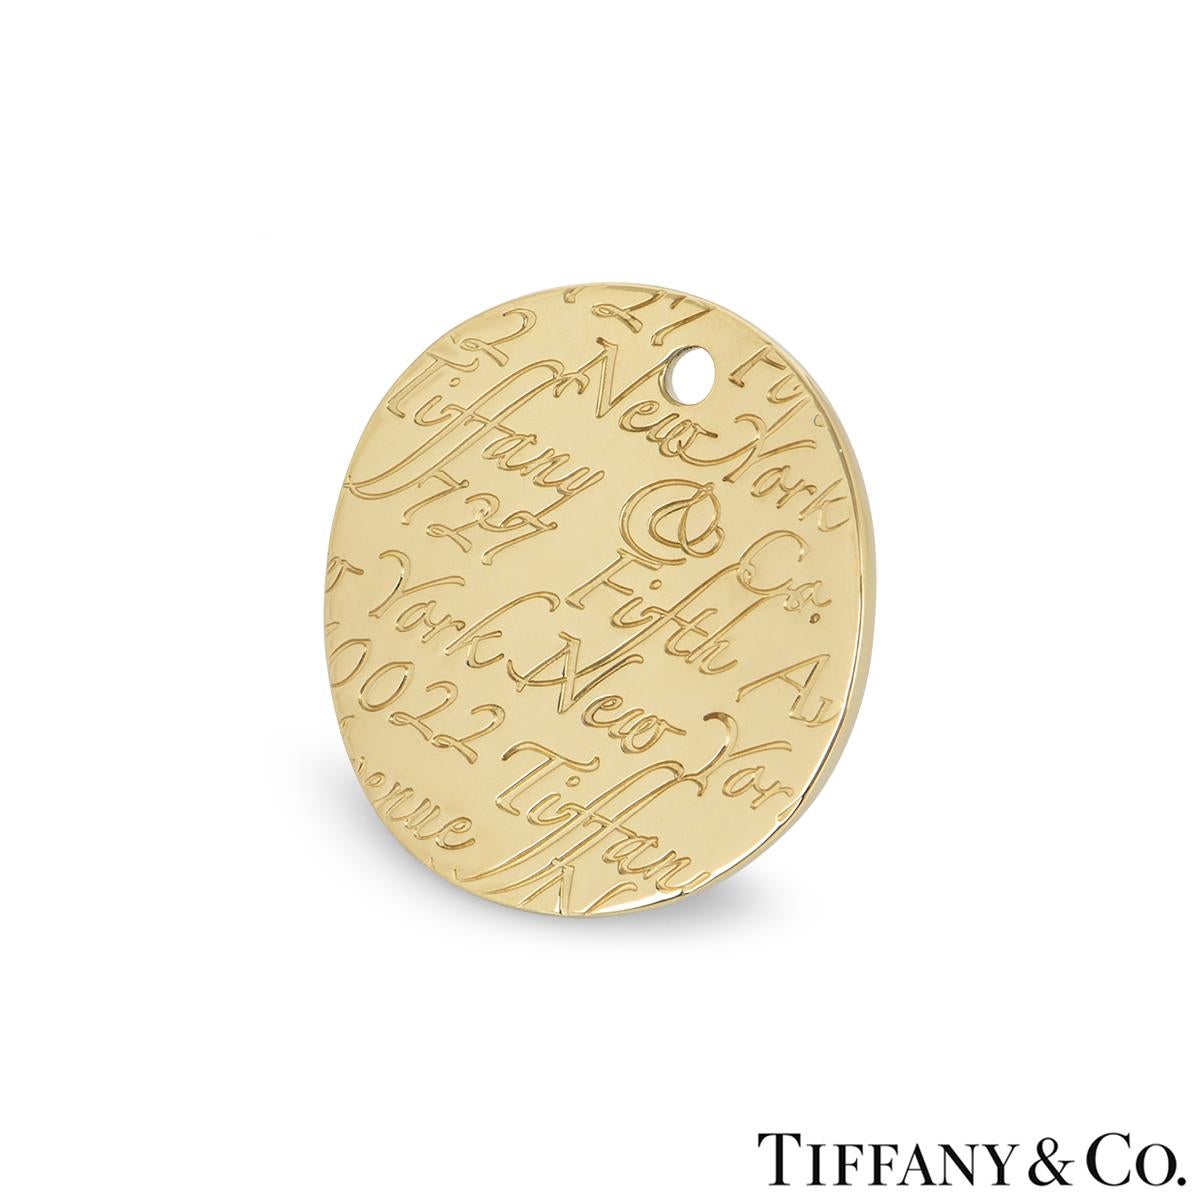 Pendentif en or jaune 18 carats de Tiffany & Co. de la collection Notes. Le pendentif circulaire au design ondulé est gravé d'une élégante écriture indiquant Tiffany & Co 727 Fifth Avenue 10022. Le pendentif mesure 2,4 cm et pèse 9,23 grammes.

Le